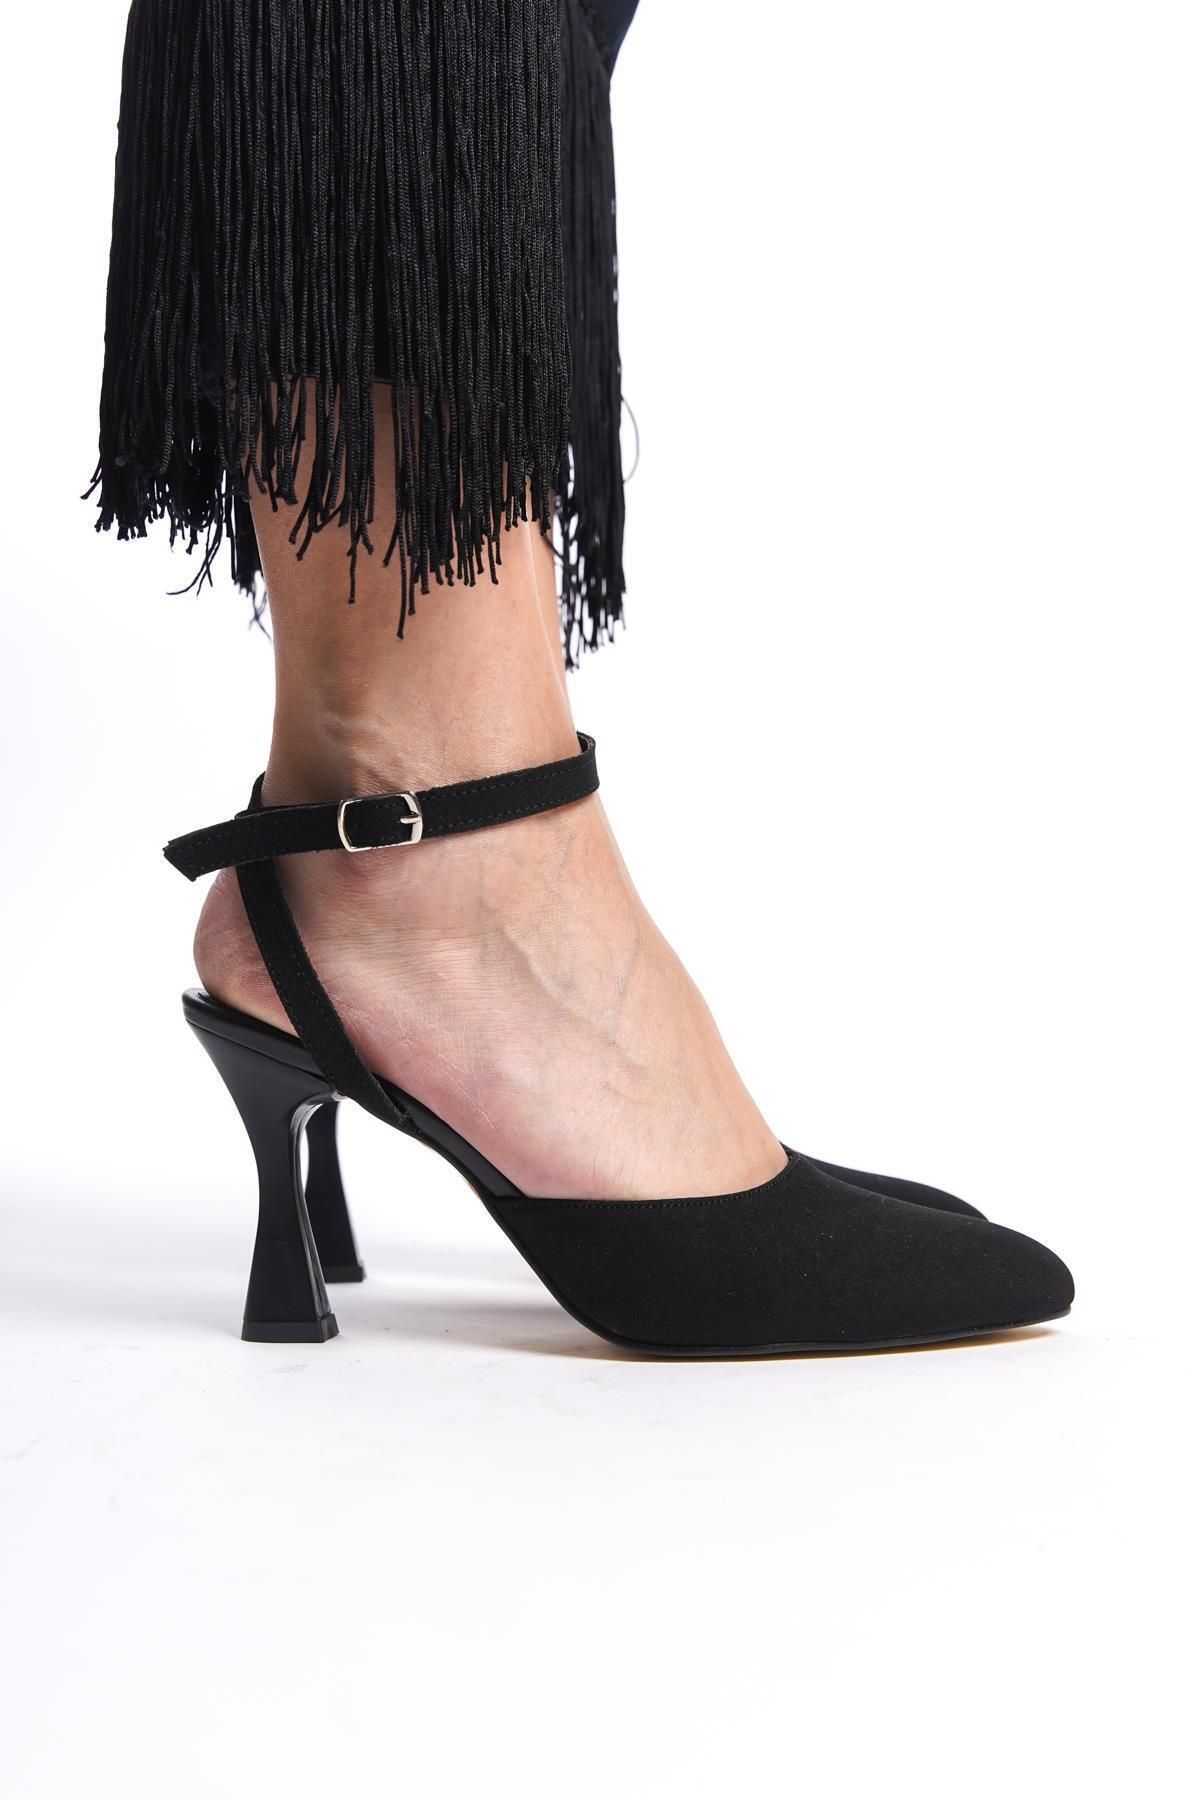 Gökhan Talay Kadın Arkası Bantlı Bilekten Bağlamalı Topuklu Ayakkabı Siyah Süet Mat Cora